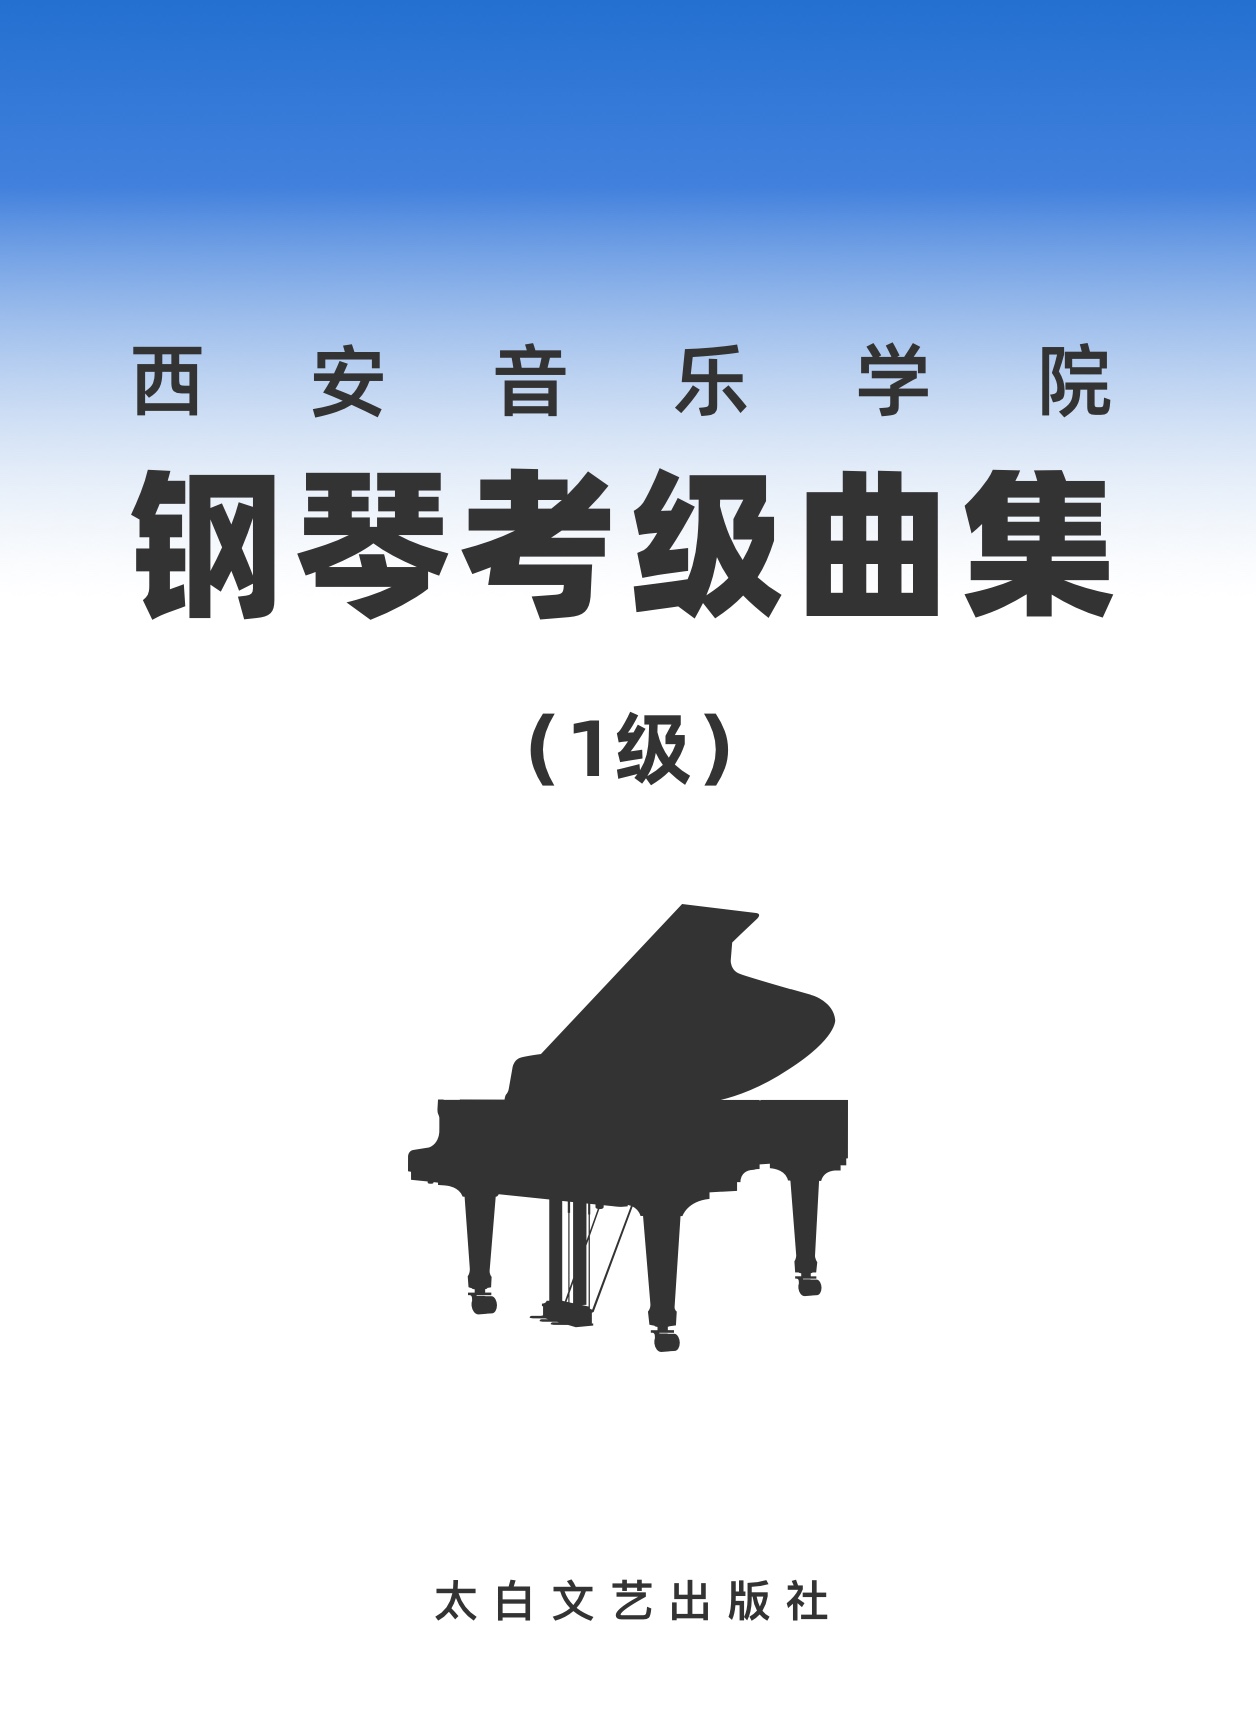 01第一级 C大调音阶-钢琴谱